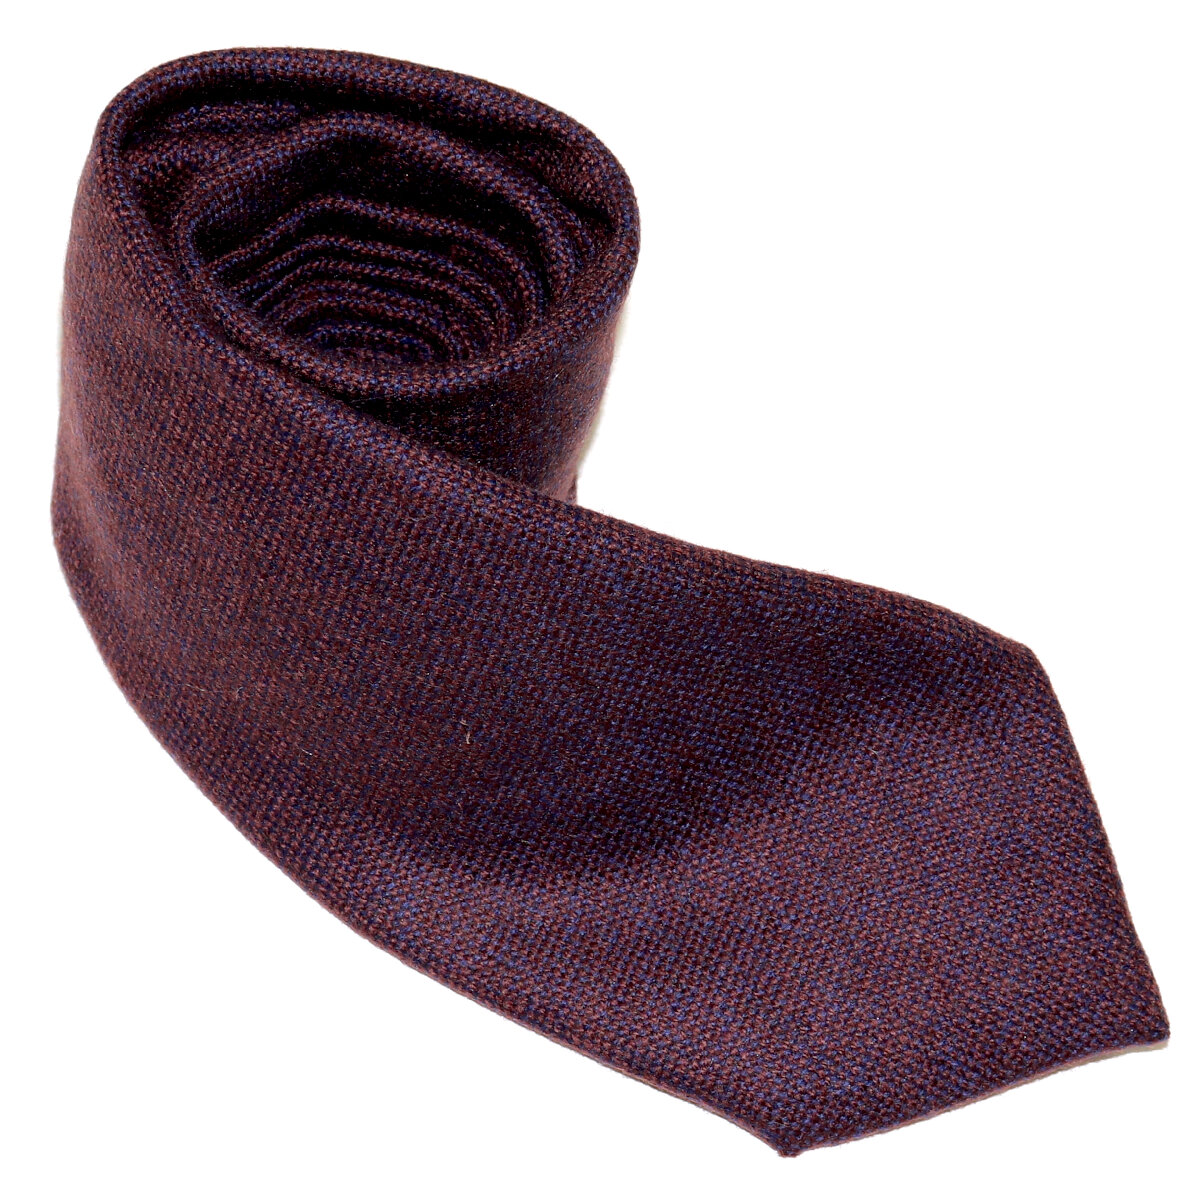 Tailored purple cashmere tie, handmade in Italy - Italo Ferretti Luxury ...